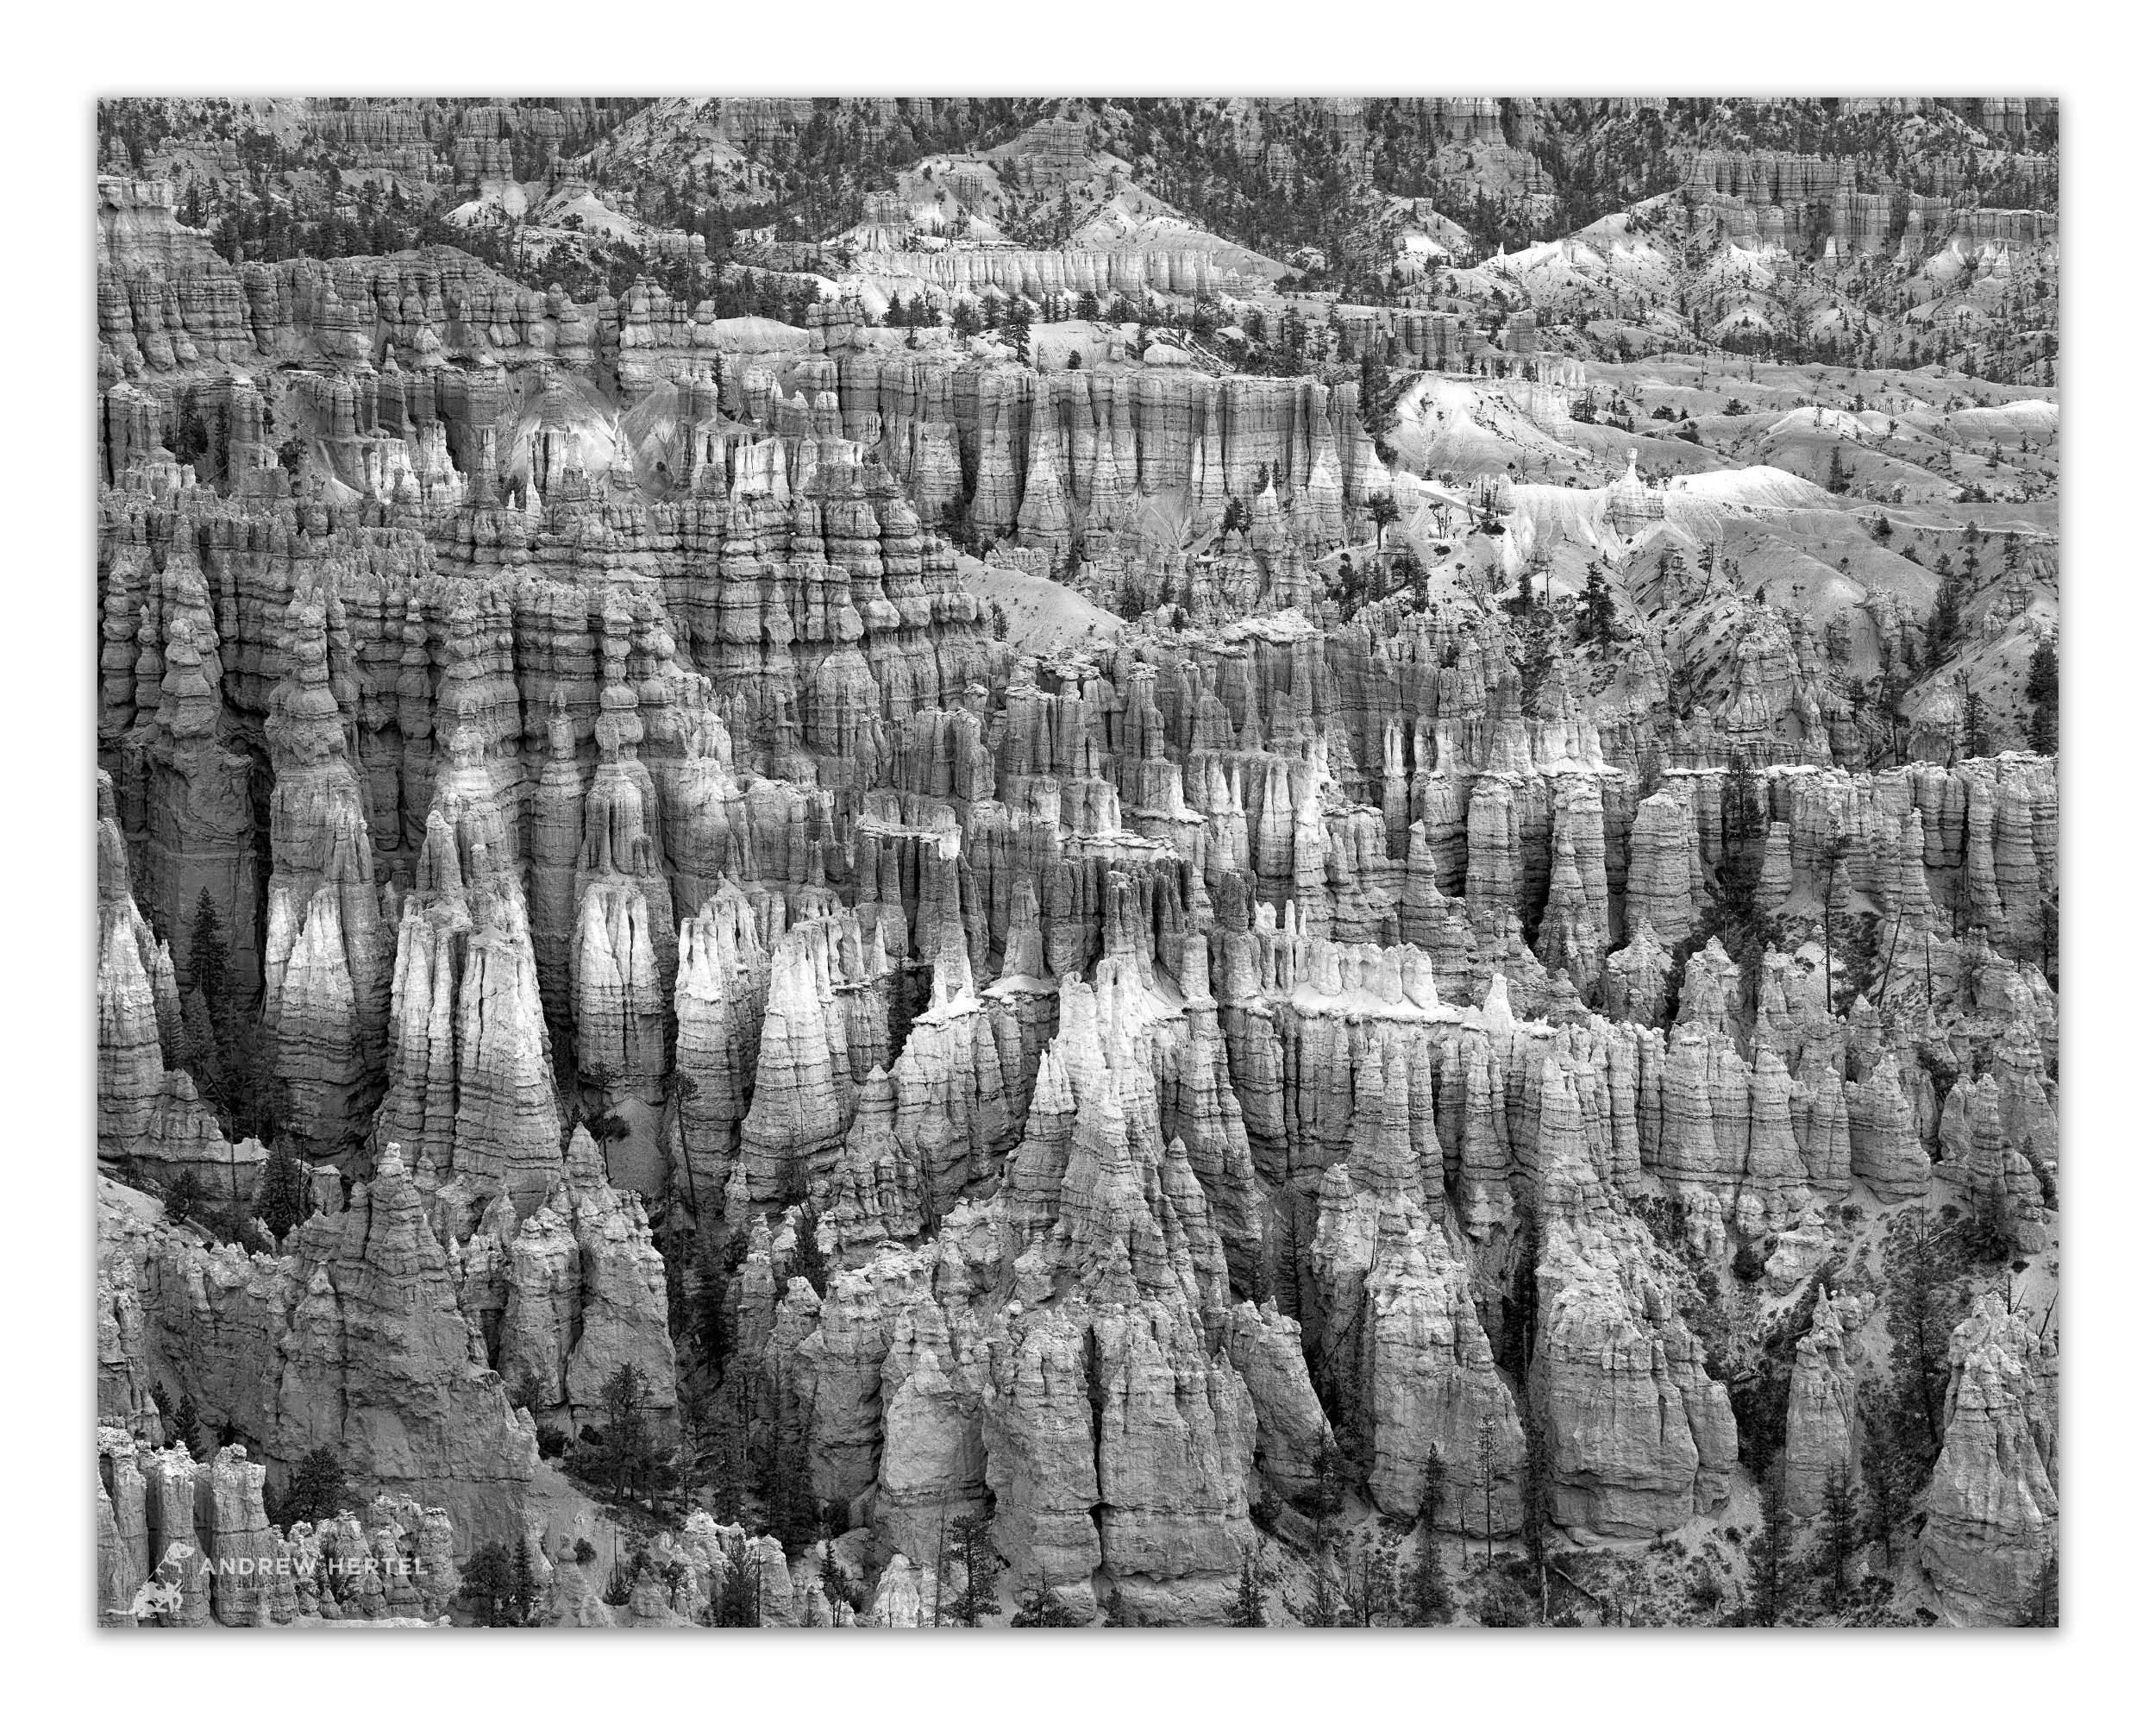 Utah Fall Trip-1289-Byrce-Canyon_WorkingWeb2.jpg